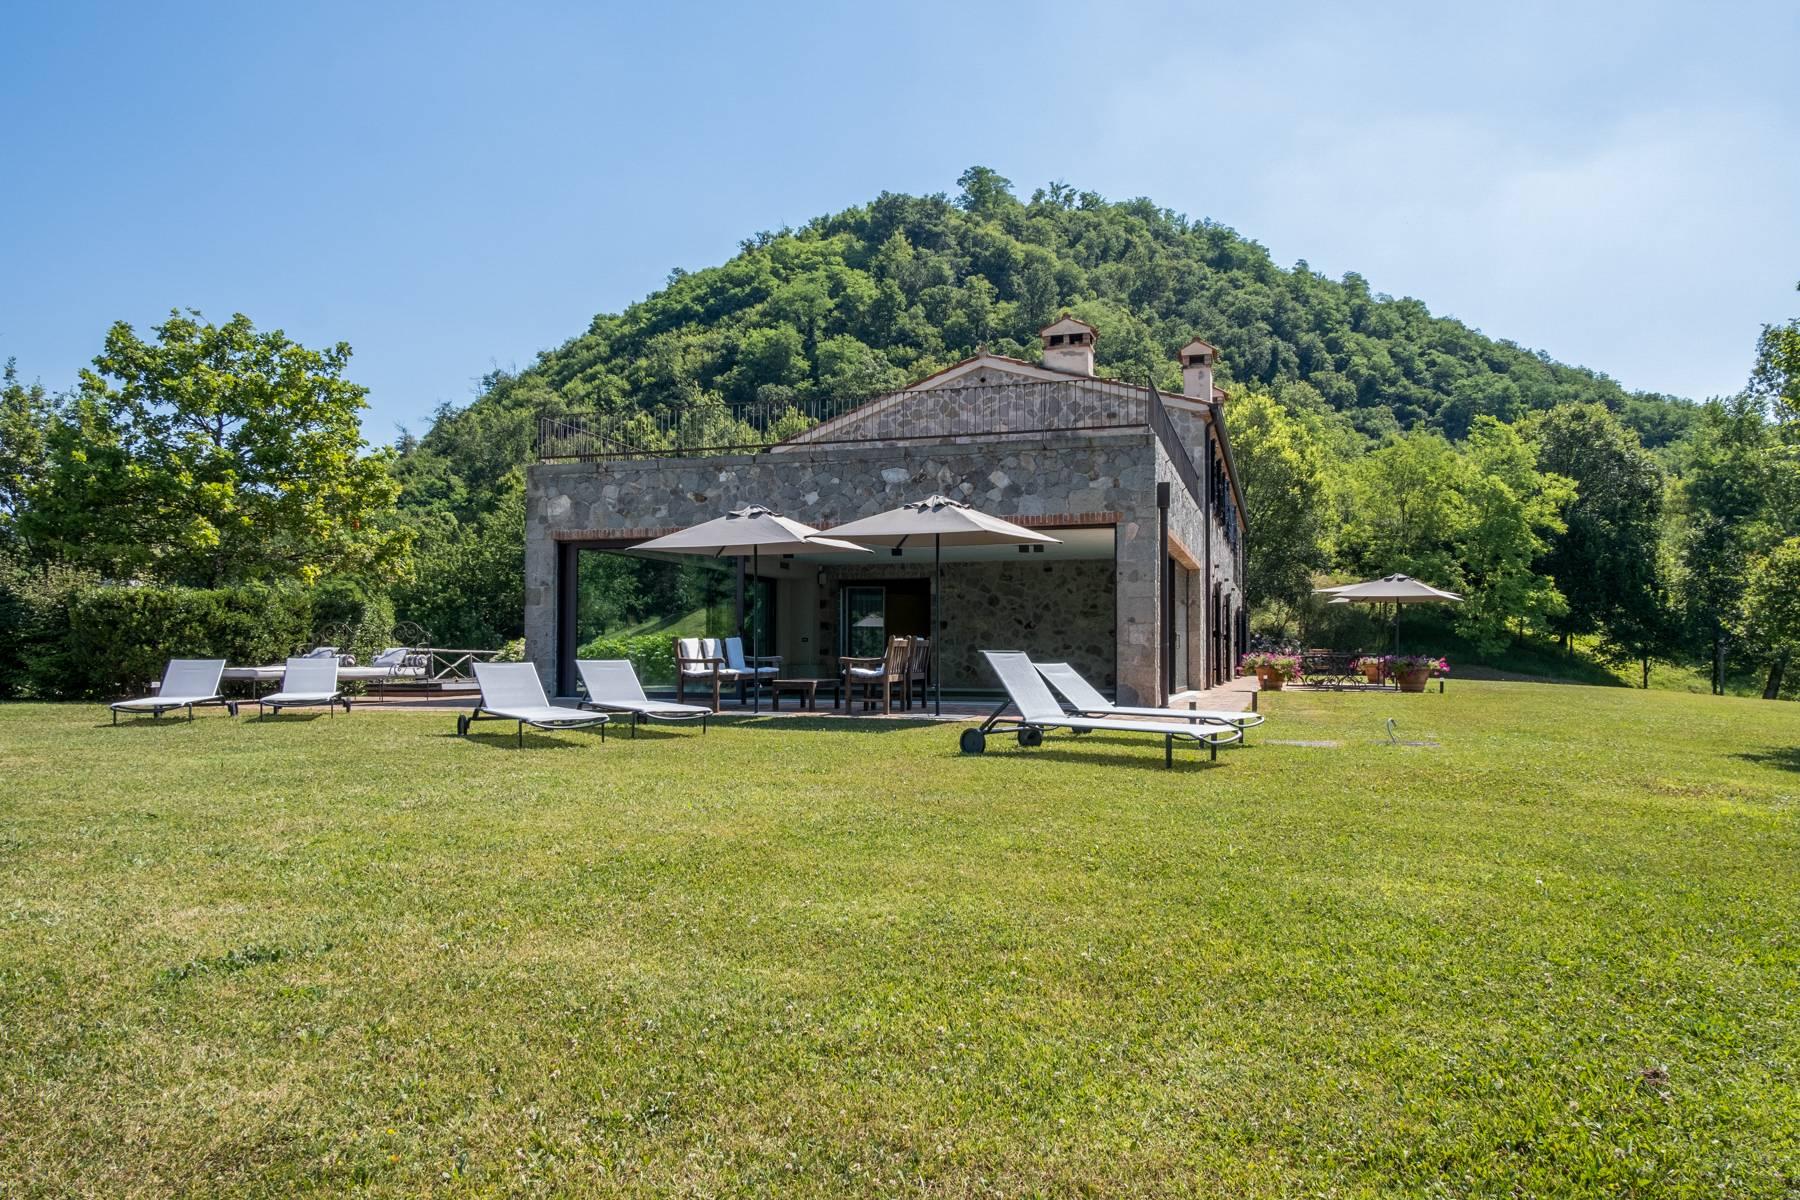 Favoloso casale rustico in collina ristrutturato con piscina e tenuta agricola a vigneti - 3